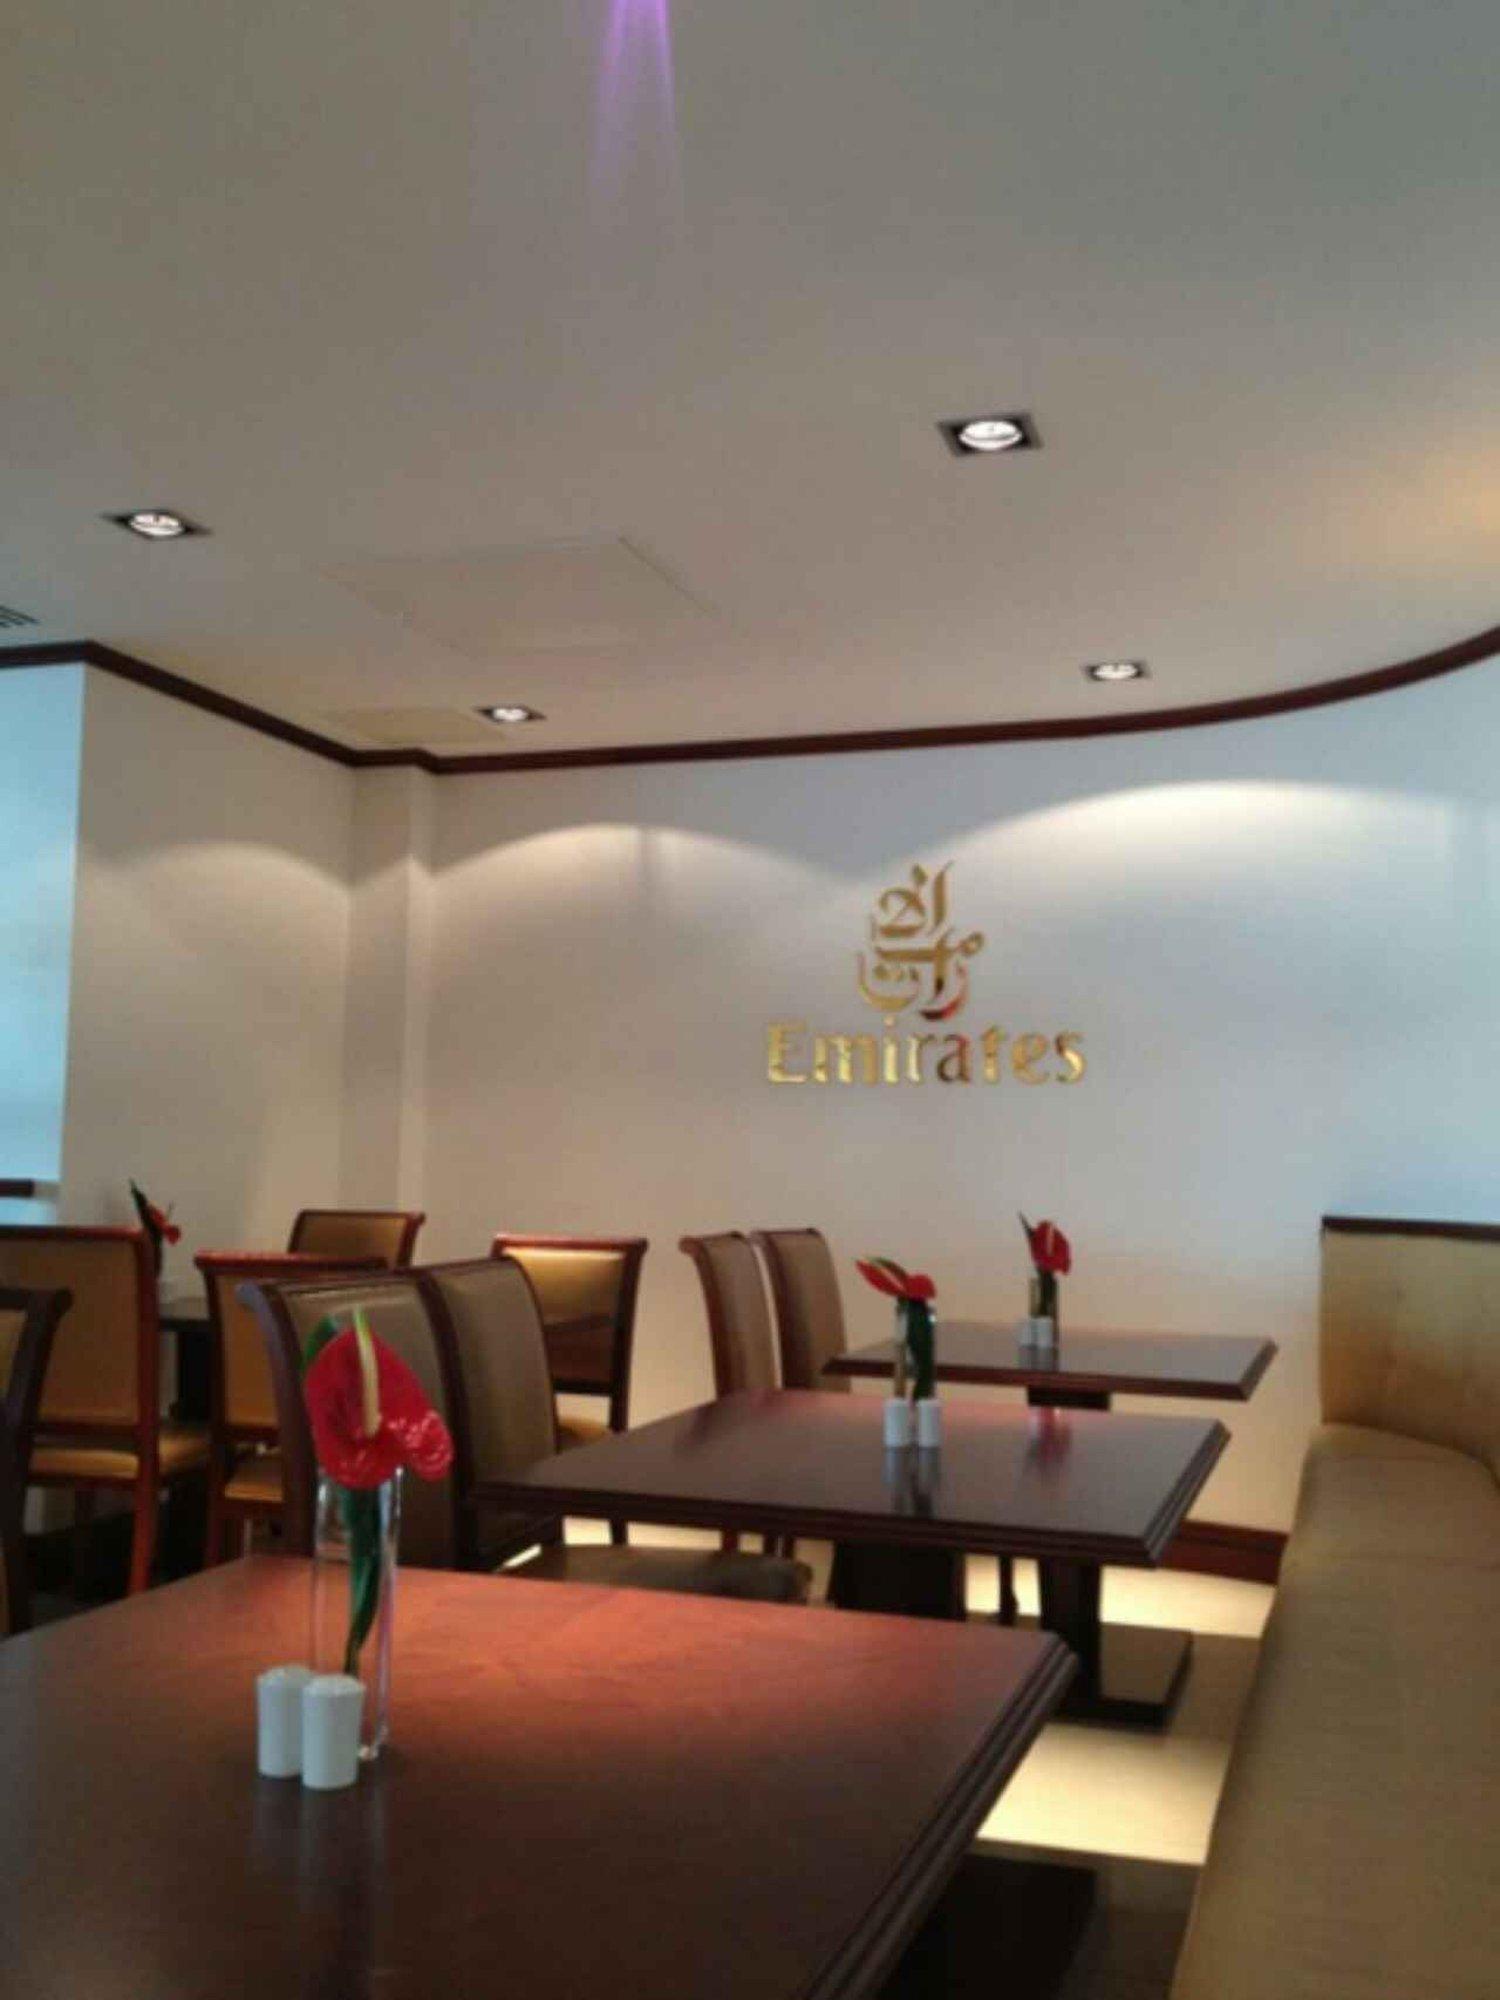 The Emirates Lounge image 3 of 10